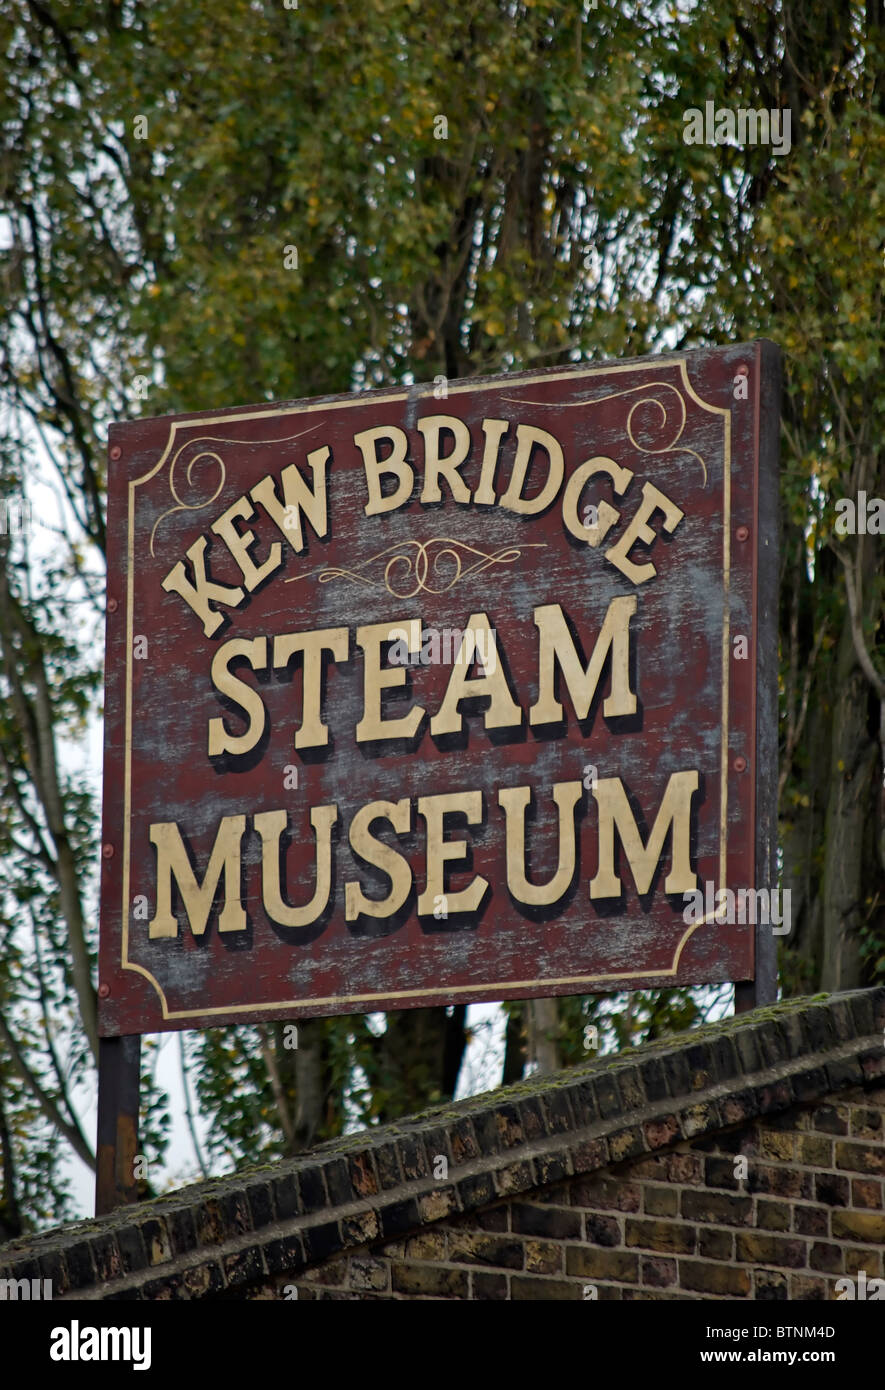 Zeichen für Kew Bridge steam Museum, West London, england Stockfoto